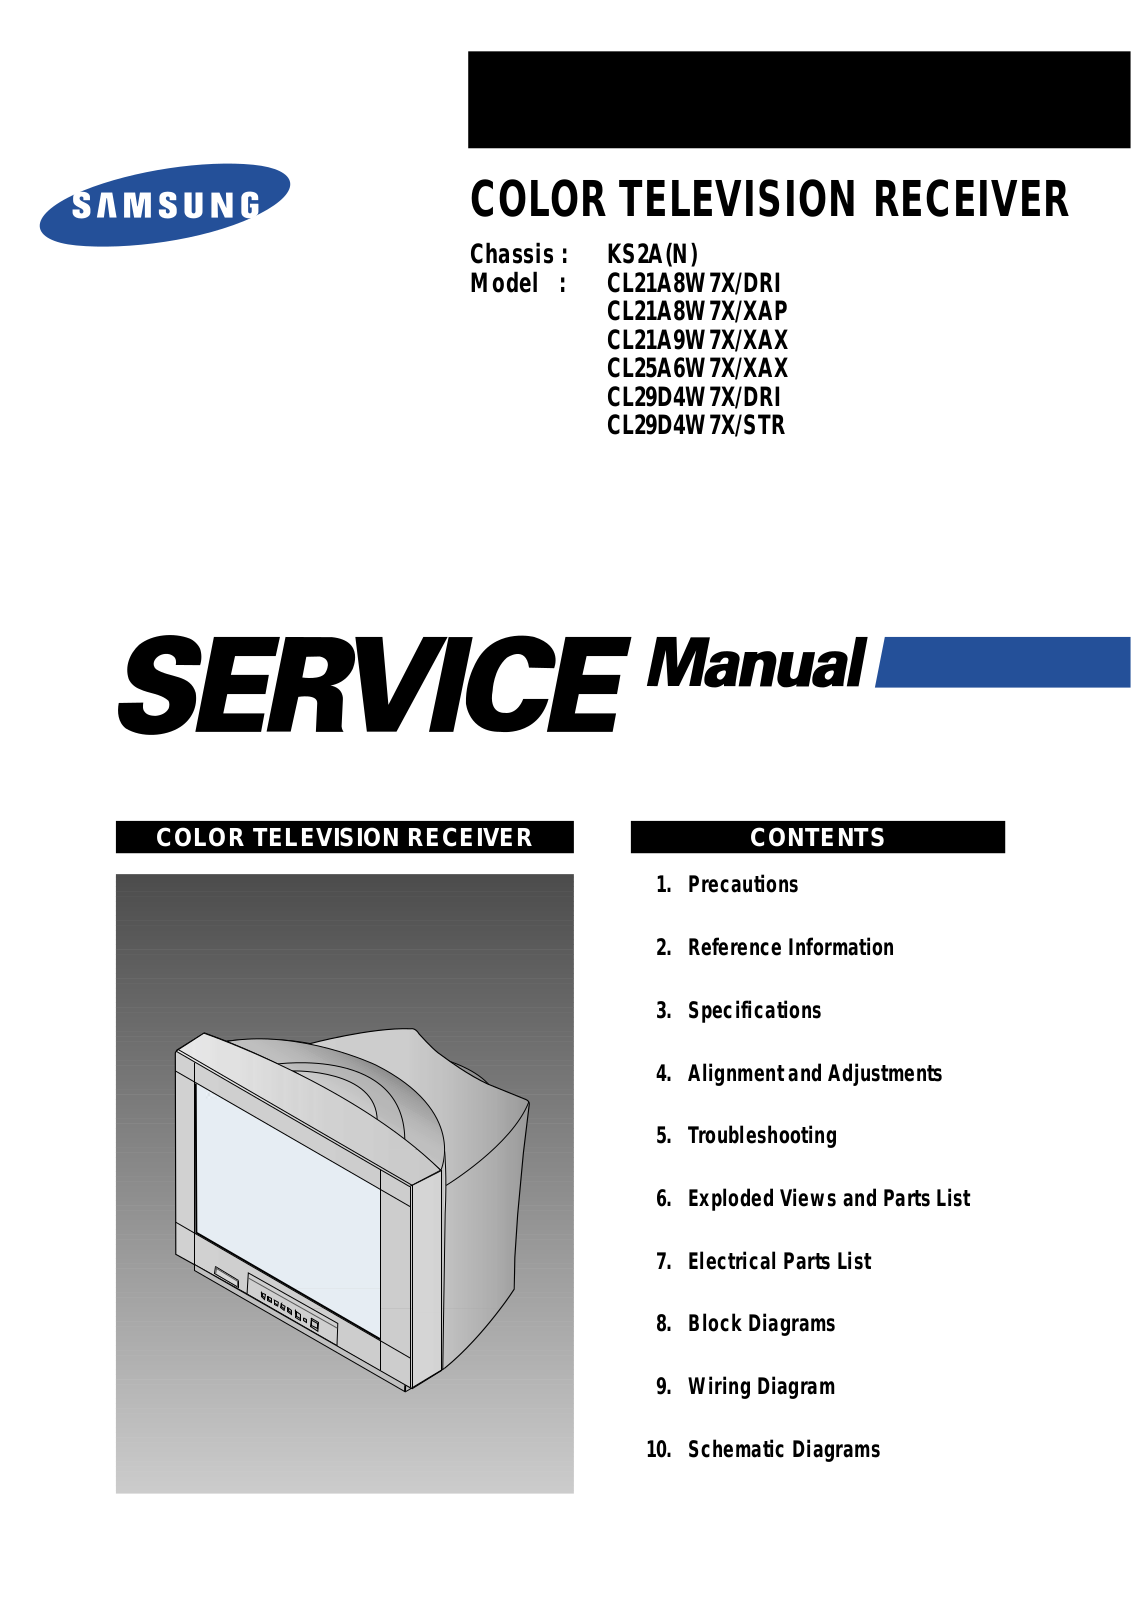 SAMSUNG CL21A8W7X-DRI, CL21A8W7X-XAP, CL21A9W7X-XAX, CL25A6W7X-XAX, CL29D4W7X-DRI Service Manual